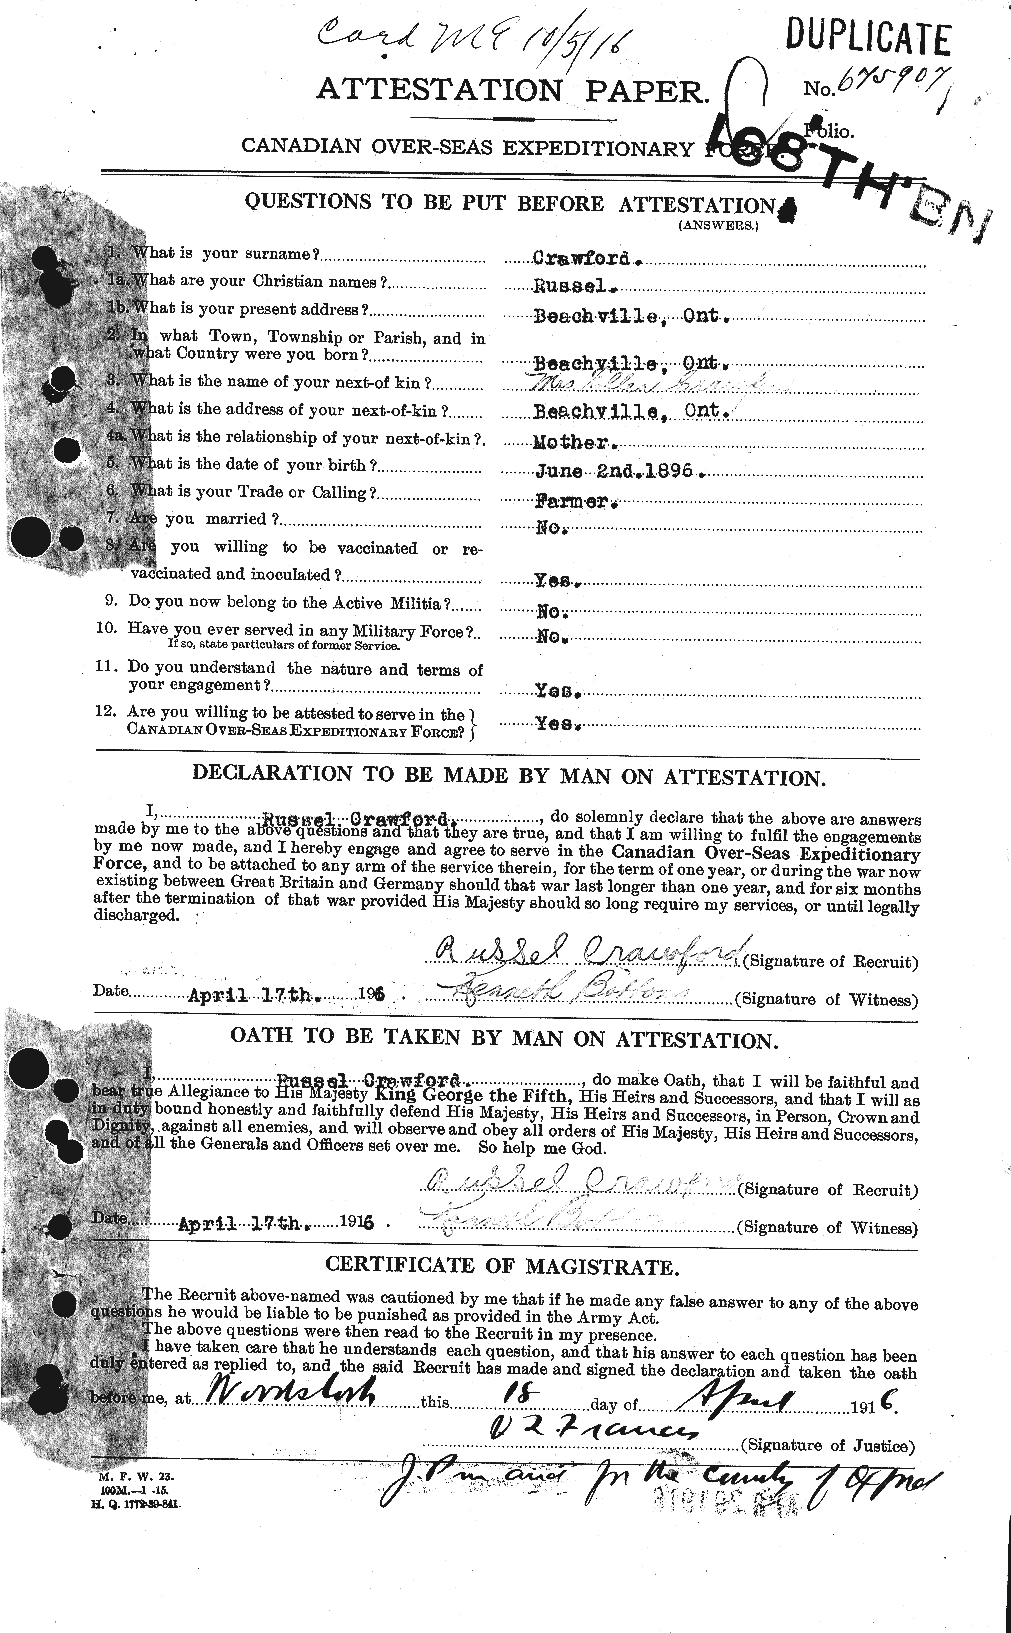 Dossiers du Personnel de la Première Guerre mondiale - CEC 061384a